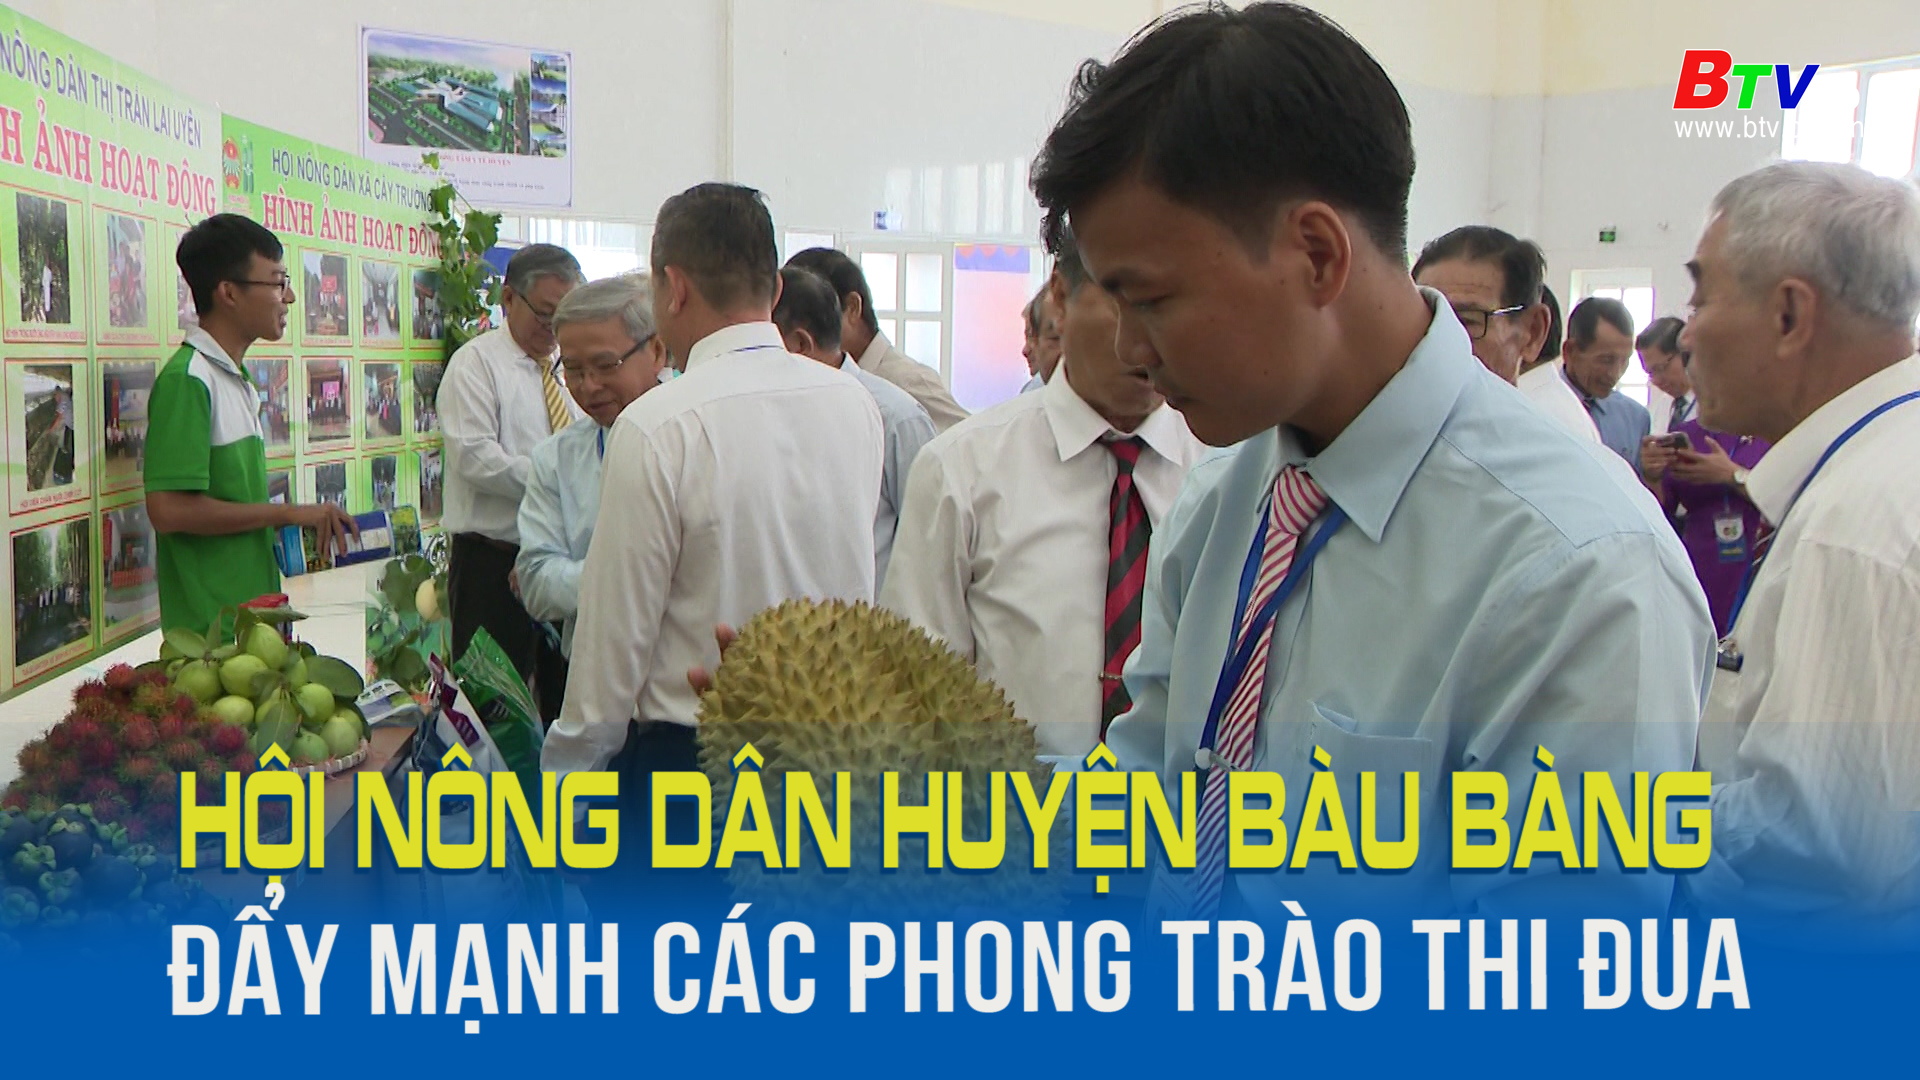 Hội nông dân huyện Bàu Bàng đẩy mạnh các phong trào thi đua